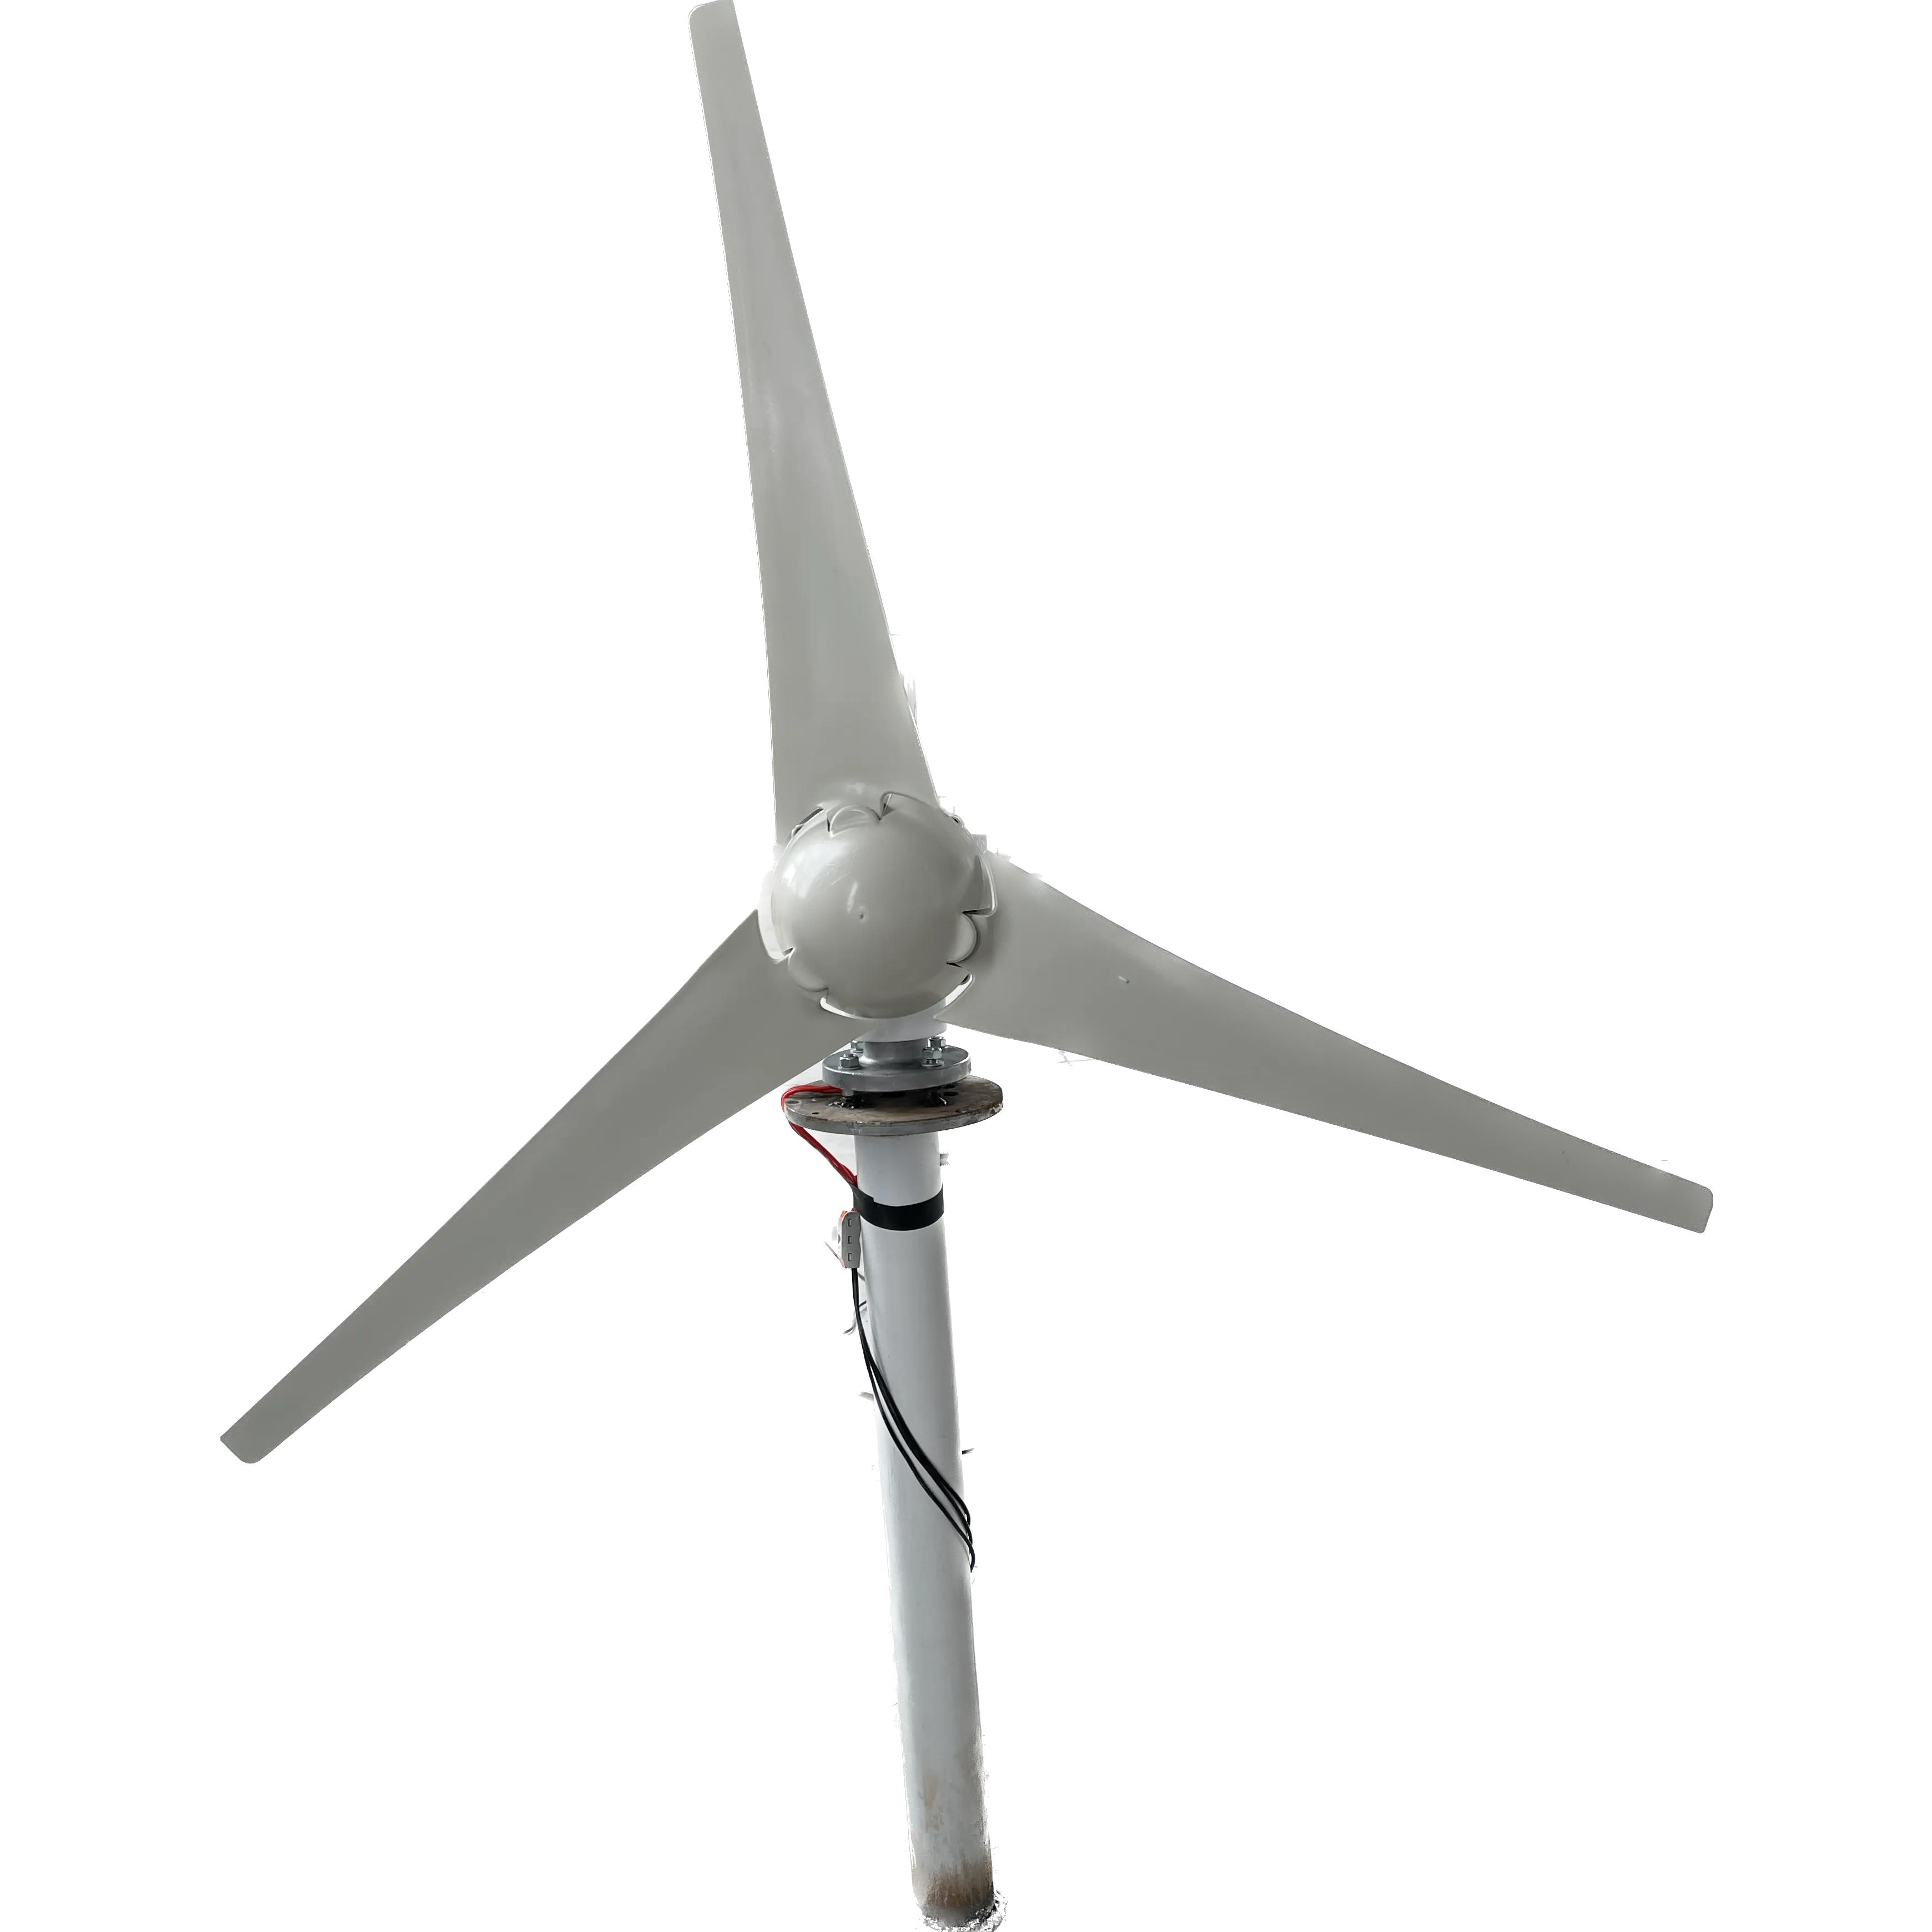 Automaxx 1500w Windturbinen generator Kit 10kva 30kw Maglev-Windkraft anlagen generator mit niedriger Drehzahl und vertikaler Achse für zu Hause